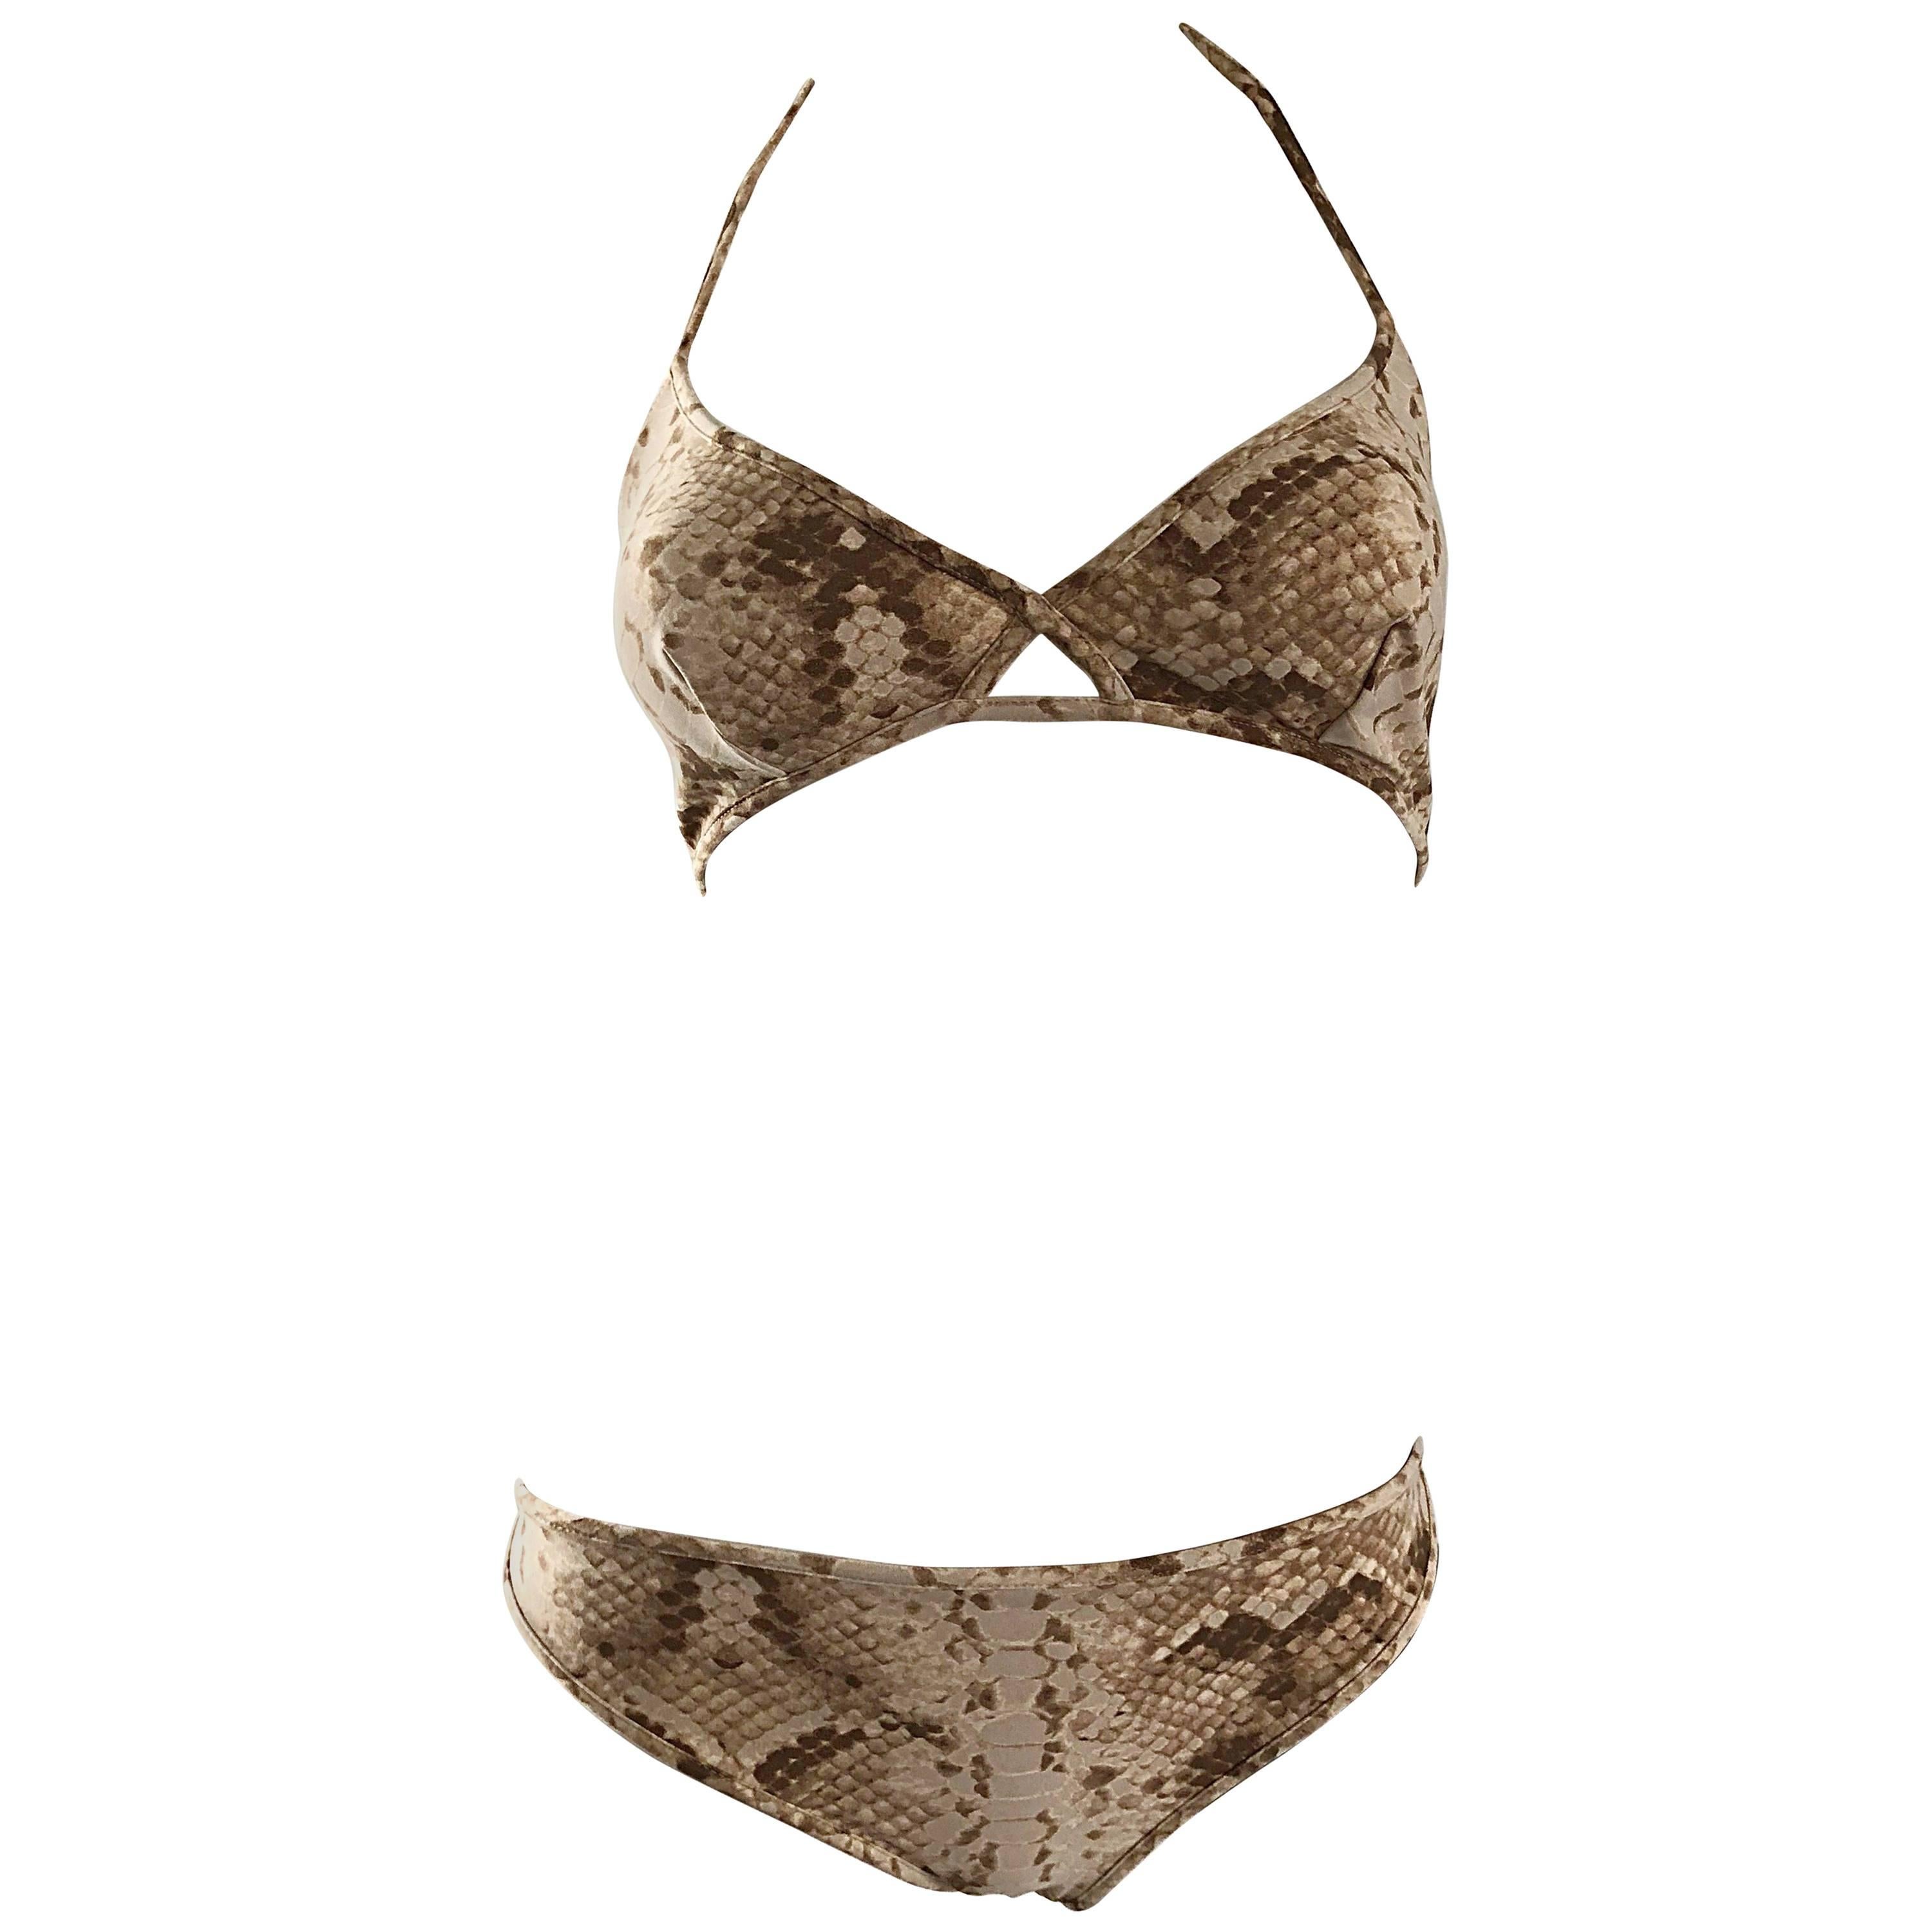 Tom Ford for Yves Saint Laurent Snake Skin Print Two Piece Bikini Swimsuit